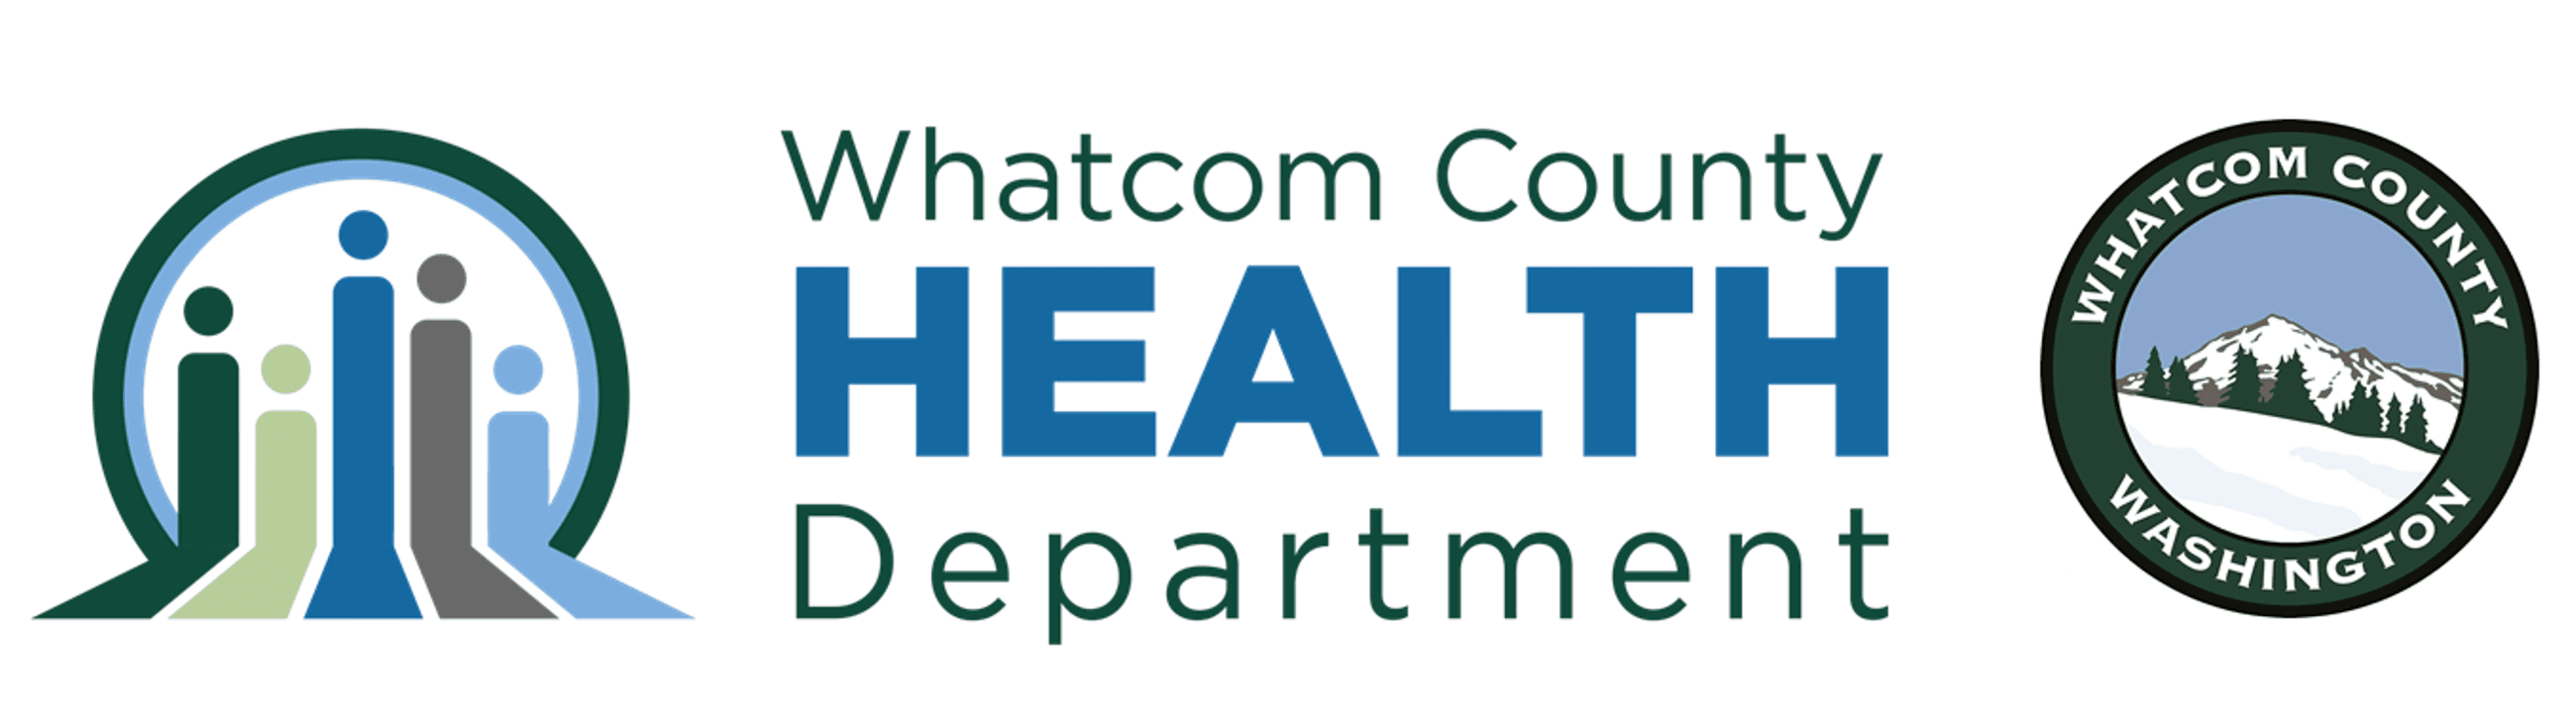 Whatcom County Logo - Health Department | Whatcom County, WA - Official Website